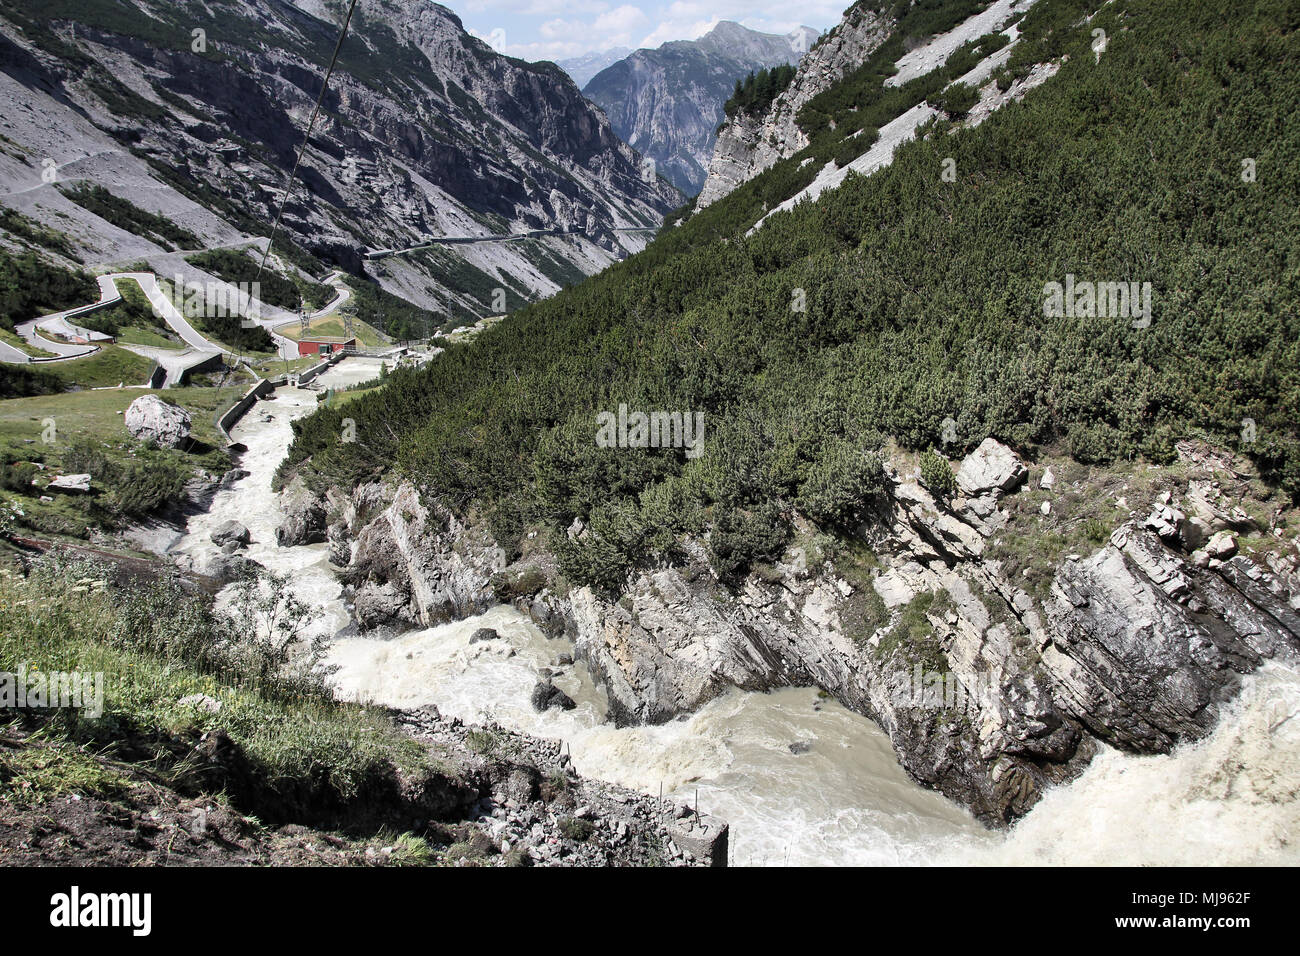 L'Italia, il Parco Nazionale dello Stelvio. Famosa strada per il Passo dello Stelvio nelle Alpi dell'Ortles. Paesaggio alpino. Foto Stock